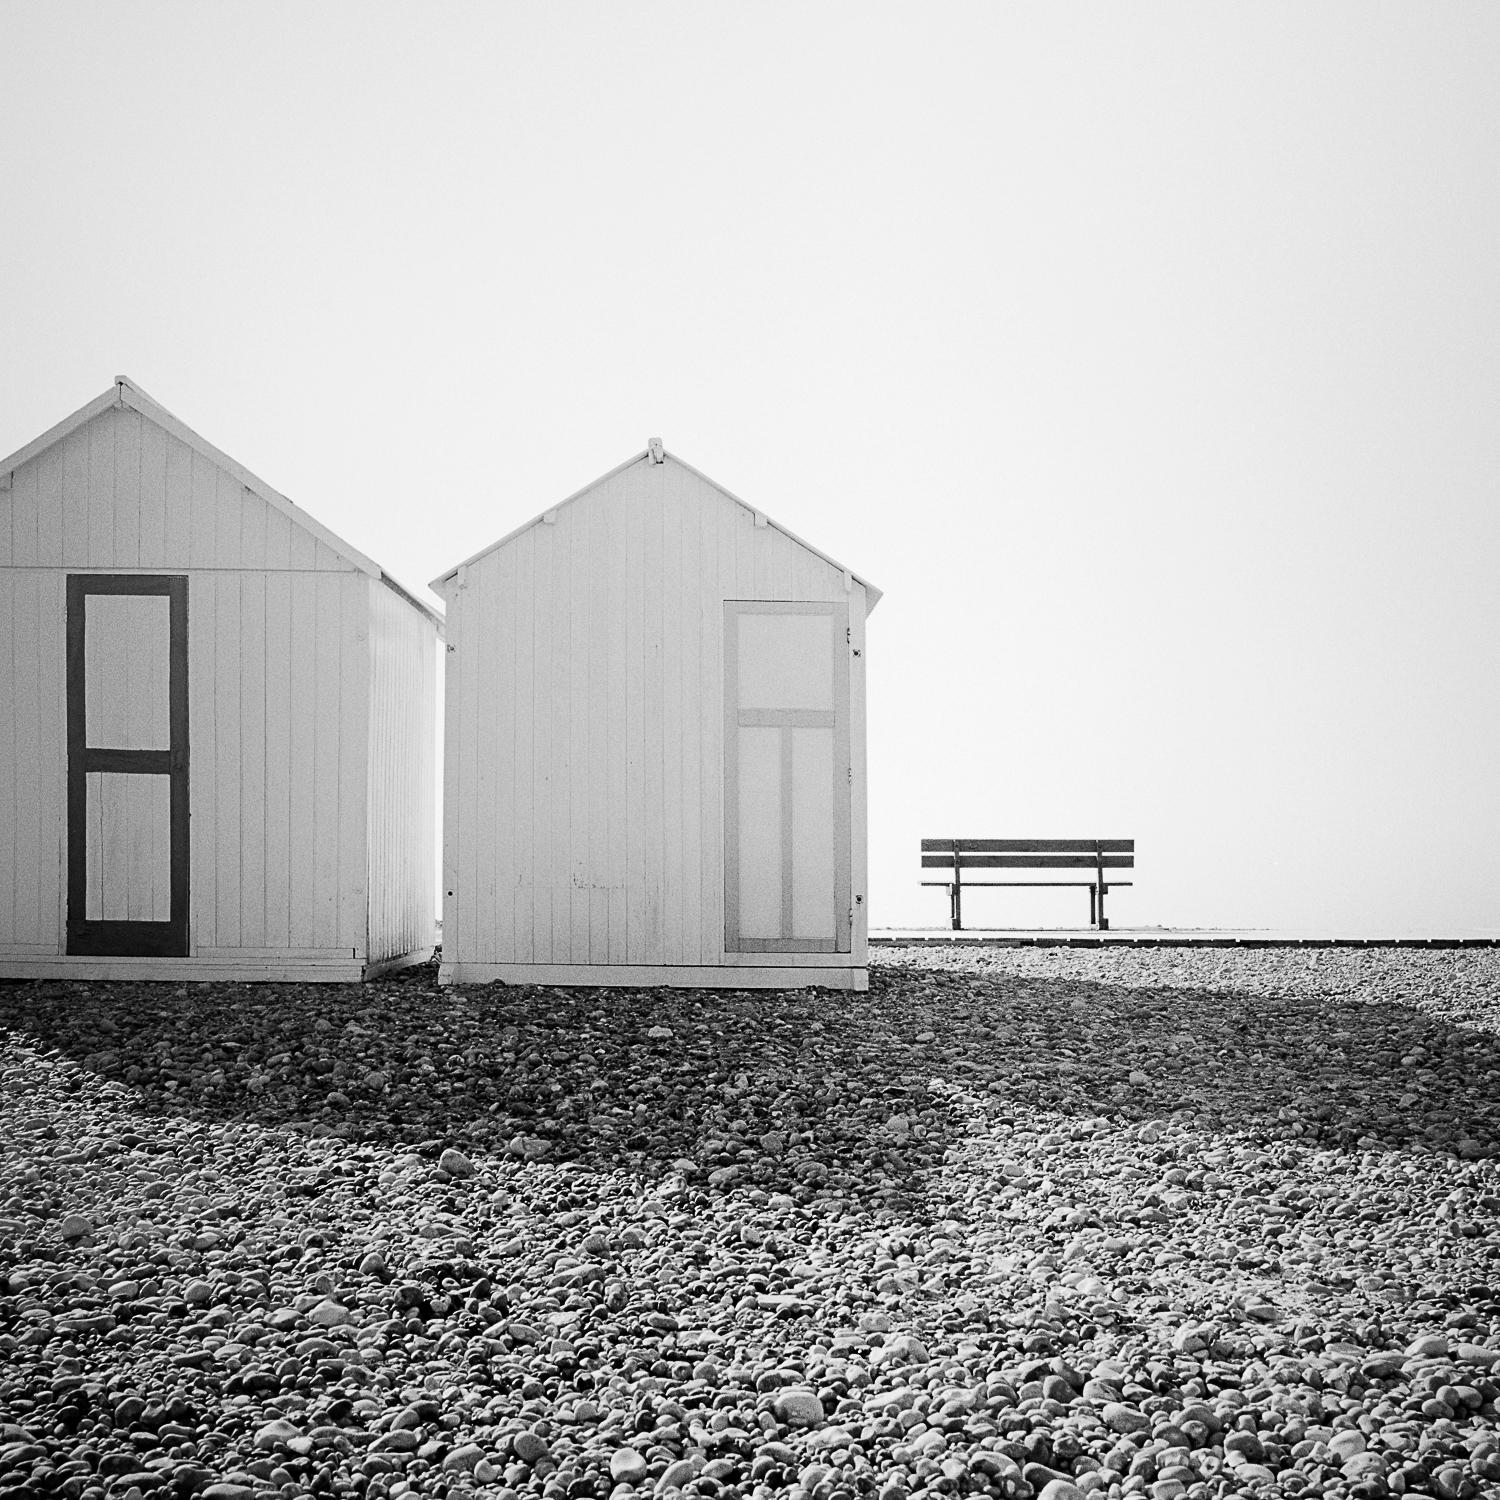 Beach Huts, romantischer Moment, Frankreich, Schwarz-Weiß-Fotografie, gerahmt (Zeitgenössisch), Photograph, von Gerald Berghammer